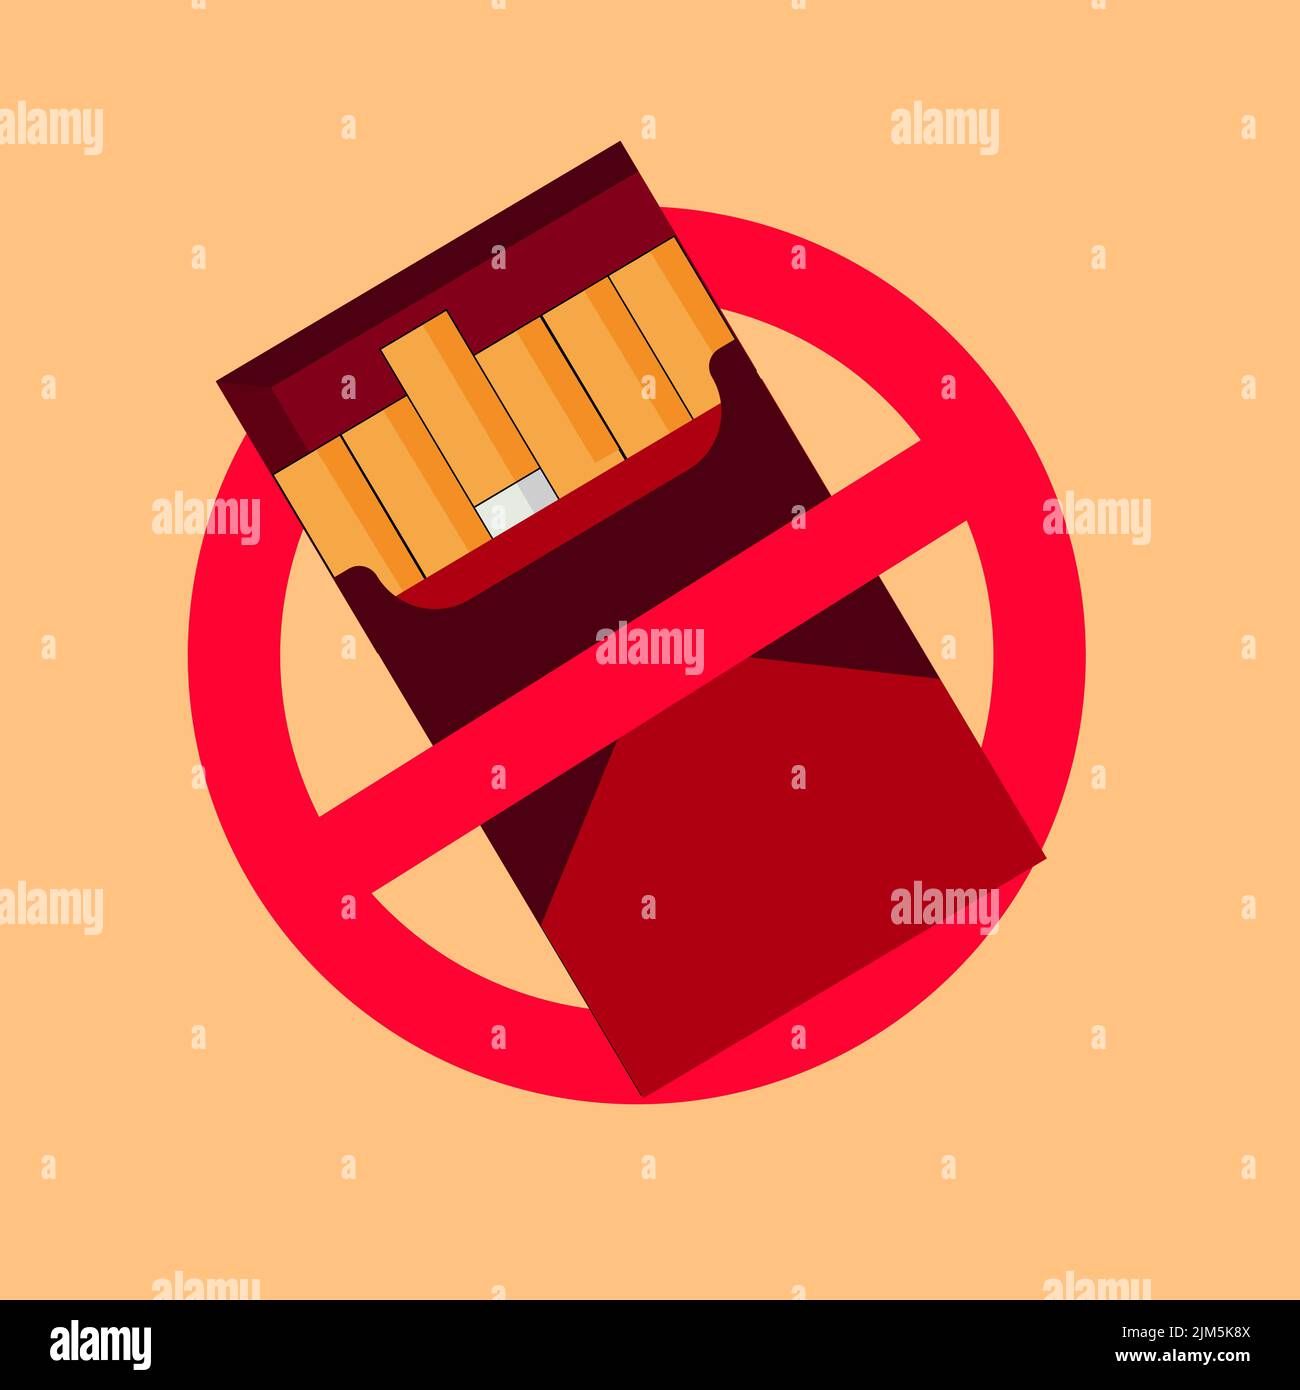 Veranschaulichung des Rauchverbots und des Tabakkonsums Stock Vektor